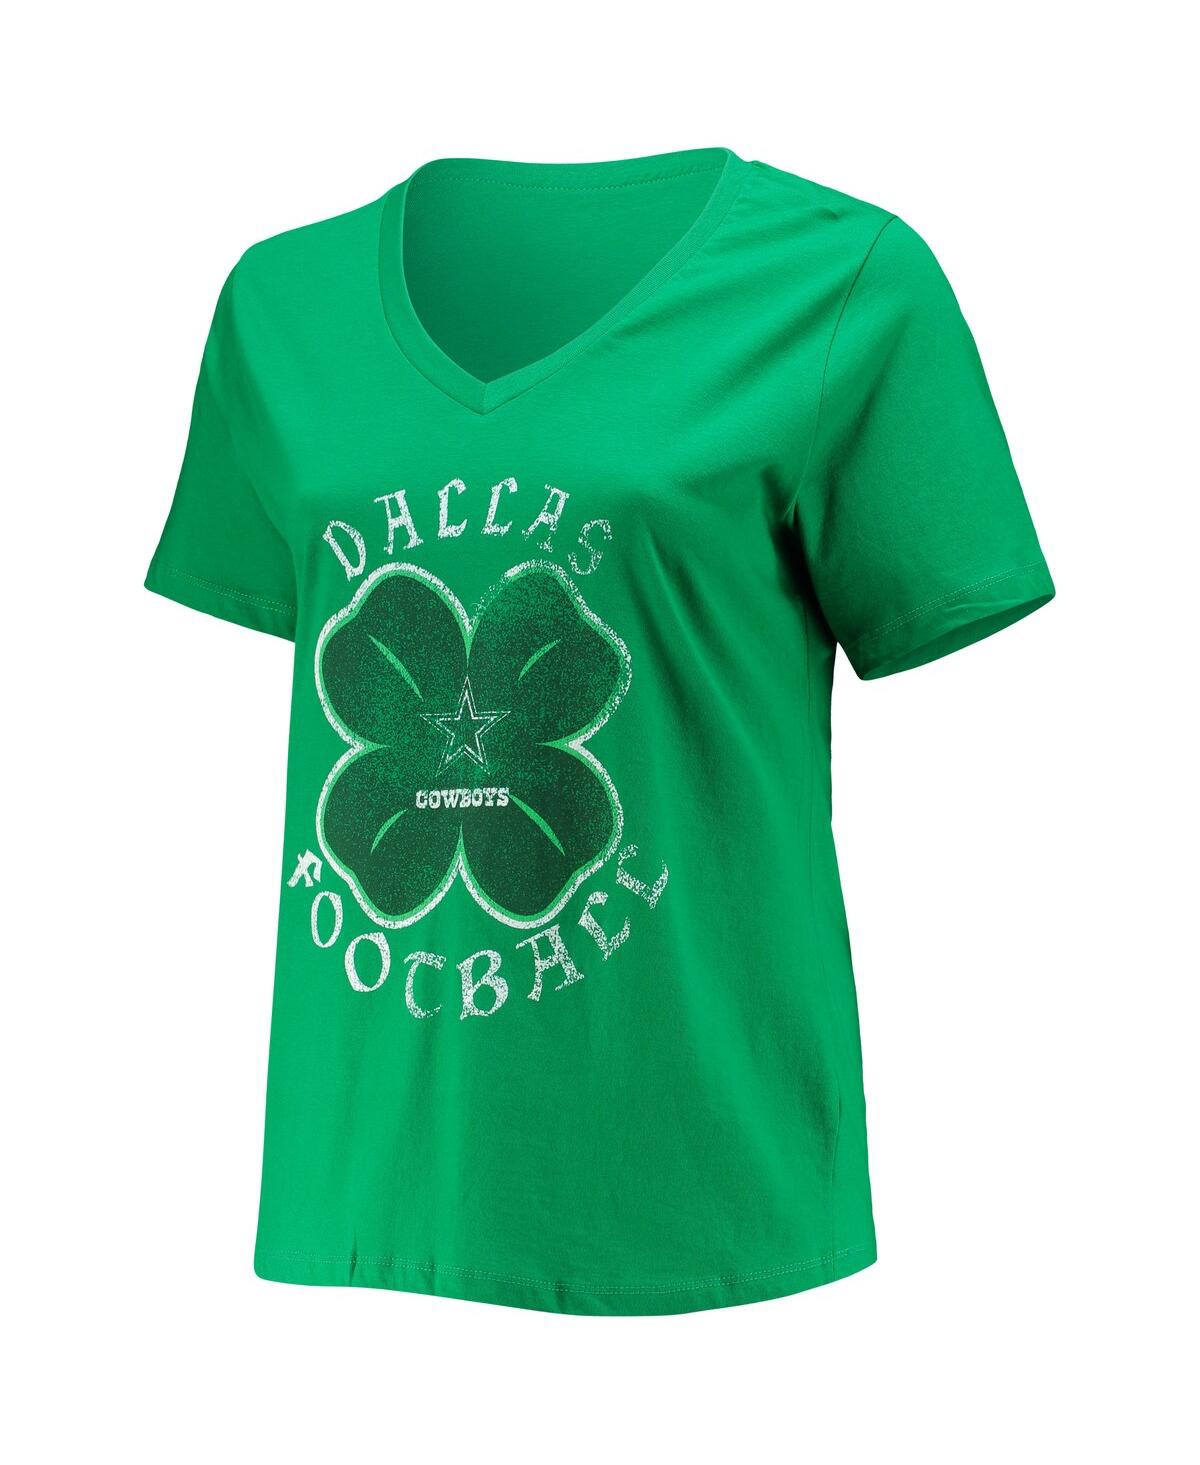 Shop Fanatics Women's  Green Dallas Cowboys Plus Size Celtic T-shirt